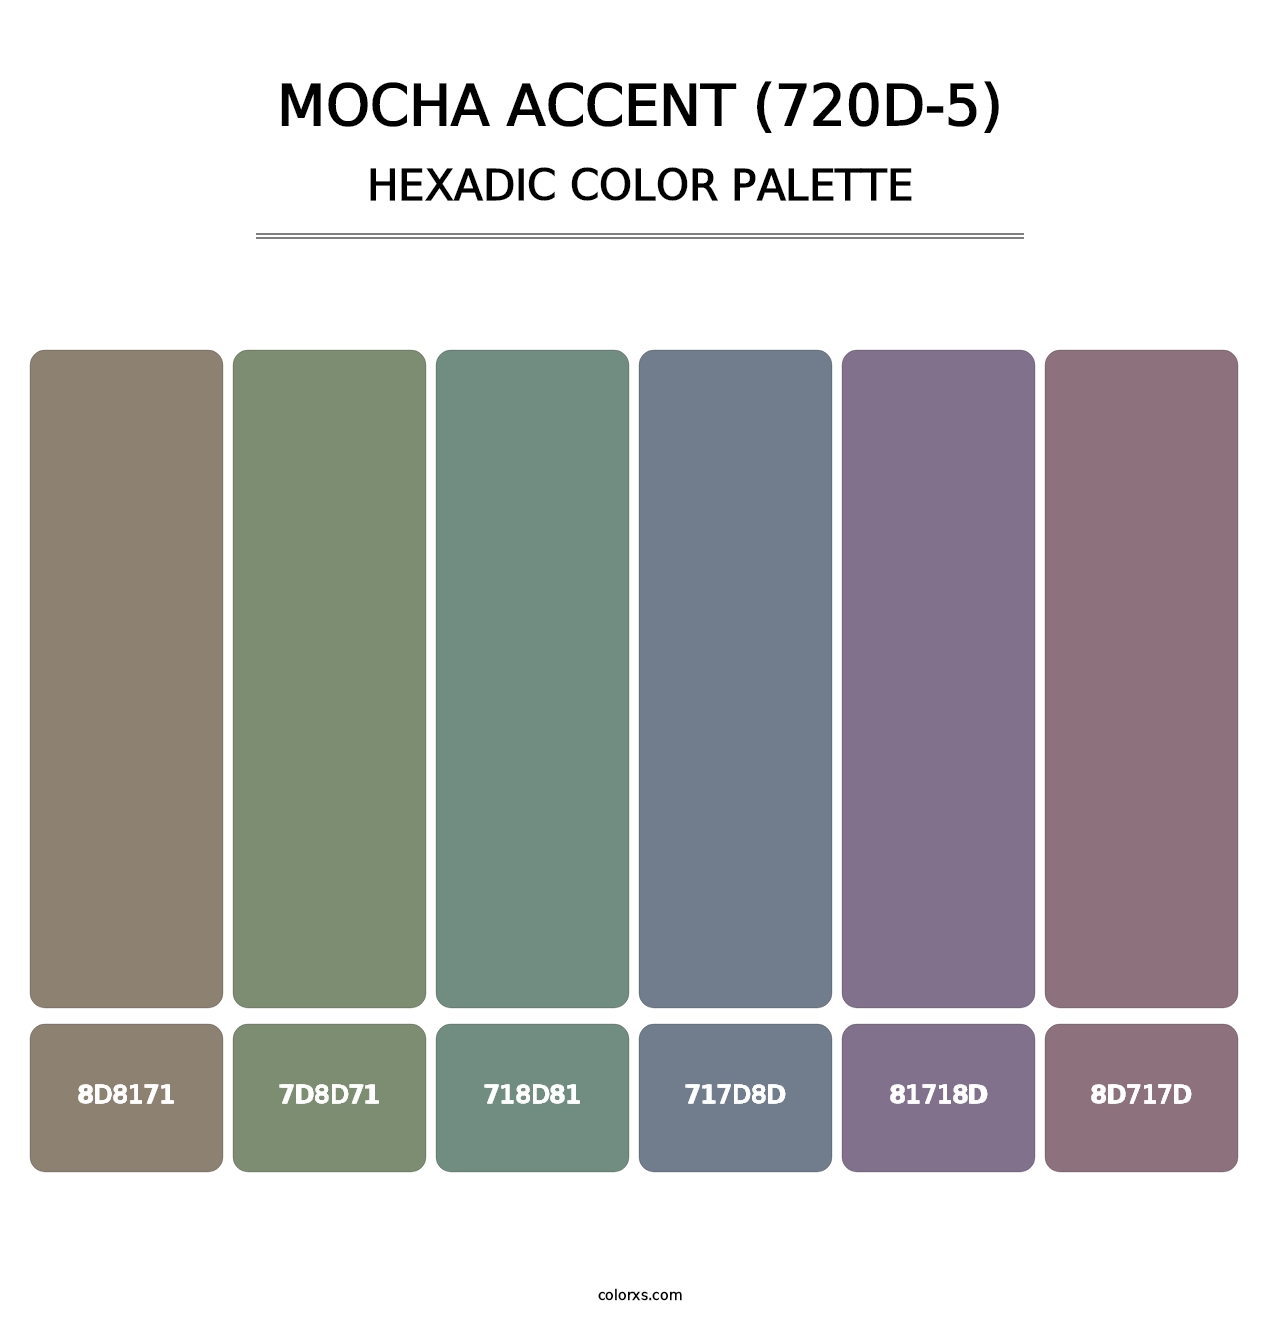 Mocha Accent (720D-5) - Hexadic Color Palette